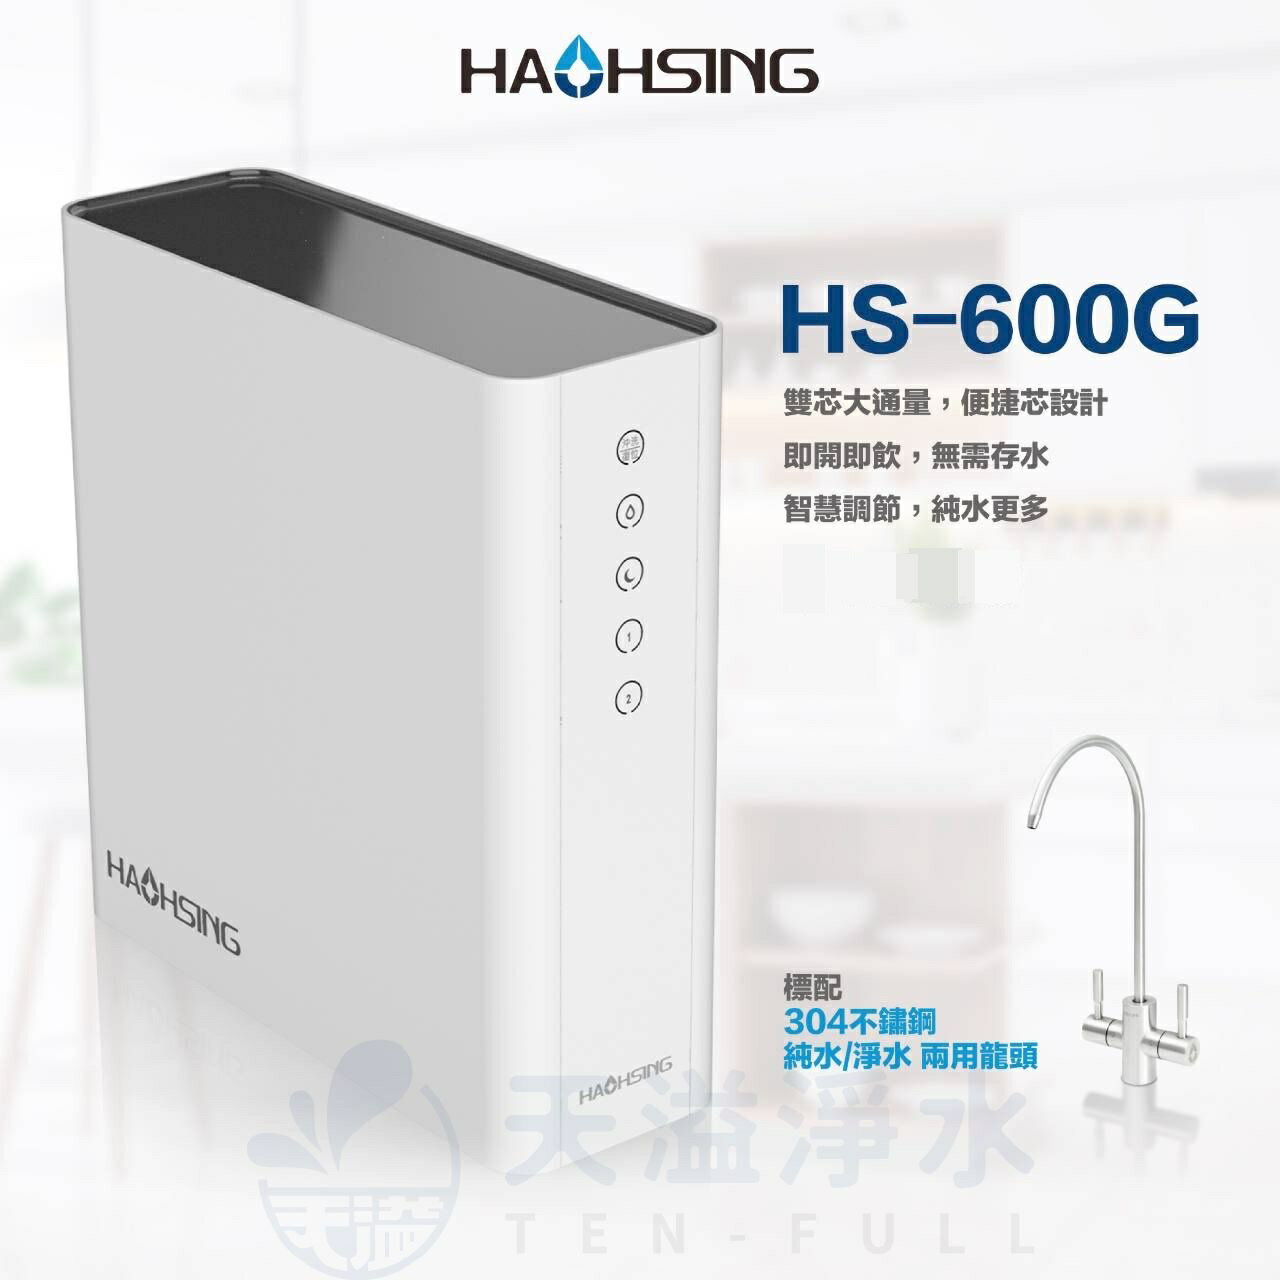 《豪星HaoHsing》HS-600G RO無桶直接輸出機HS-600G-A1【淨純水雙出水設計】【600加侖直輸機】【贈全台安裝】【APP下單點數加倍】